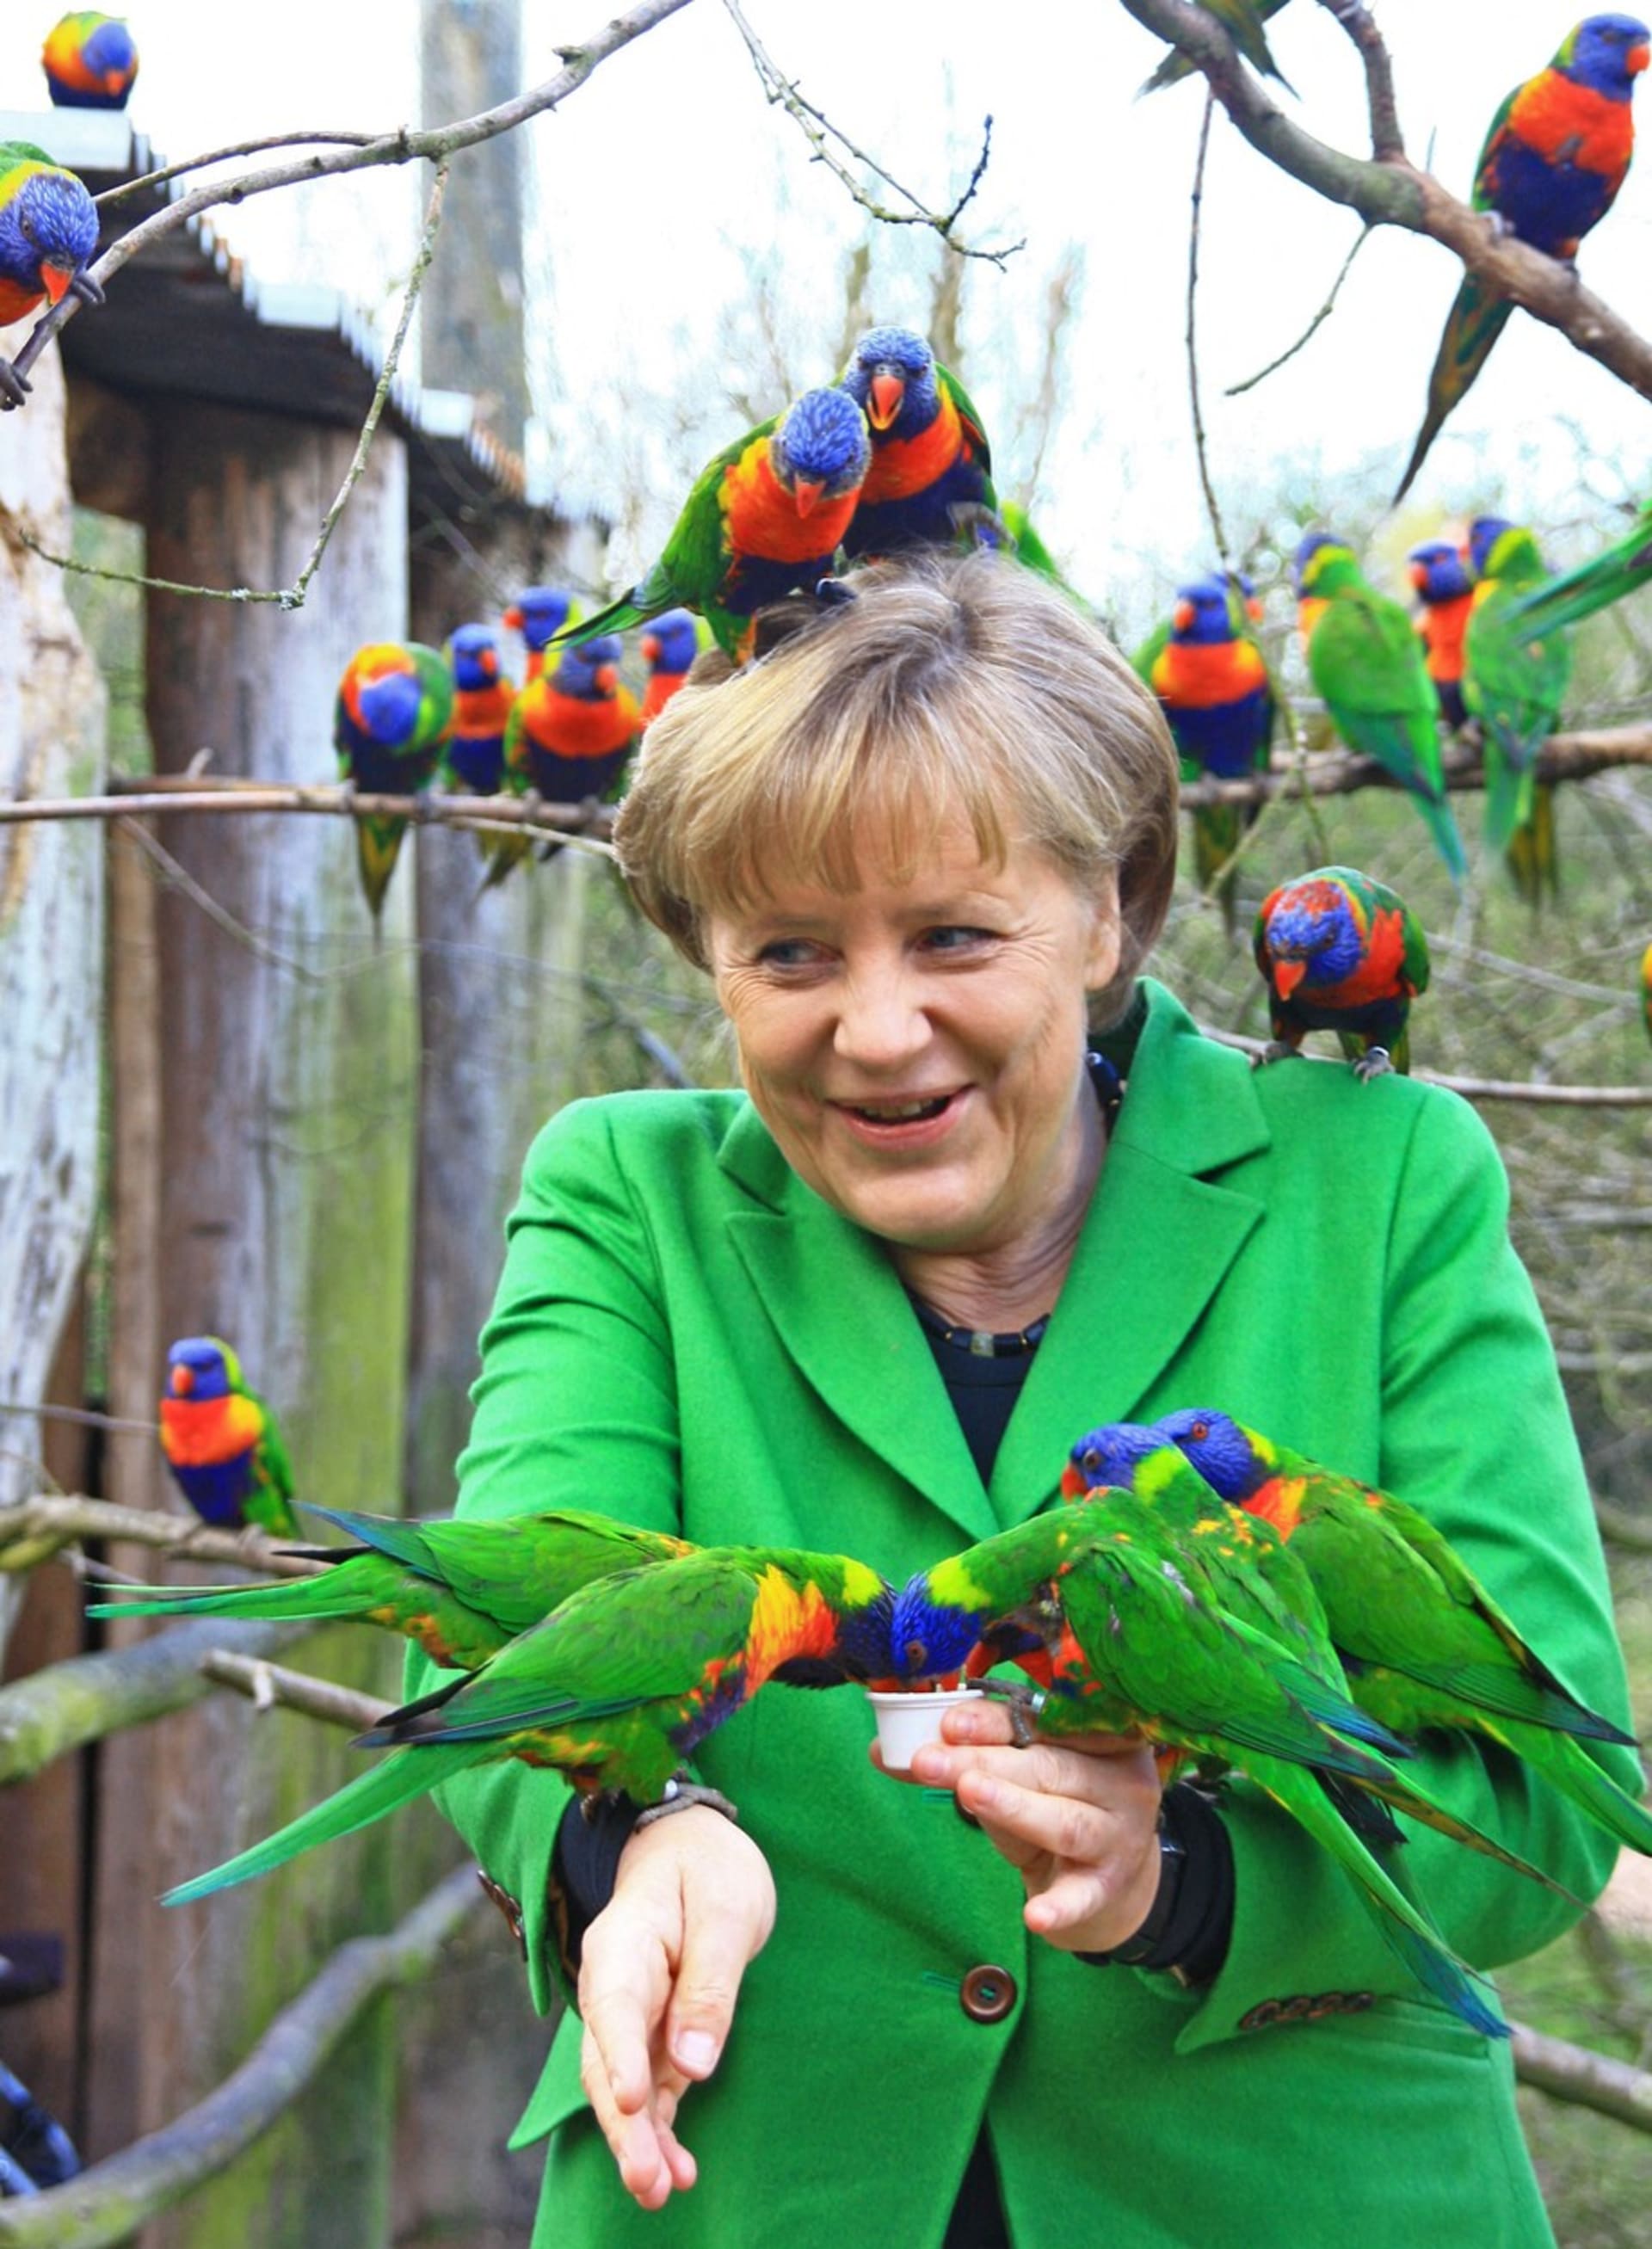 Angela Merkelová byla několikrát označena za nejmocnější ženu světa